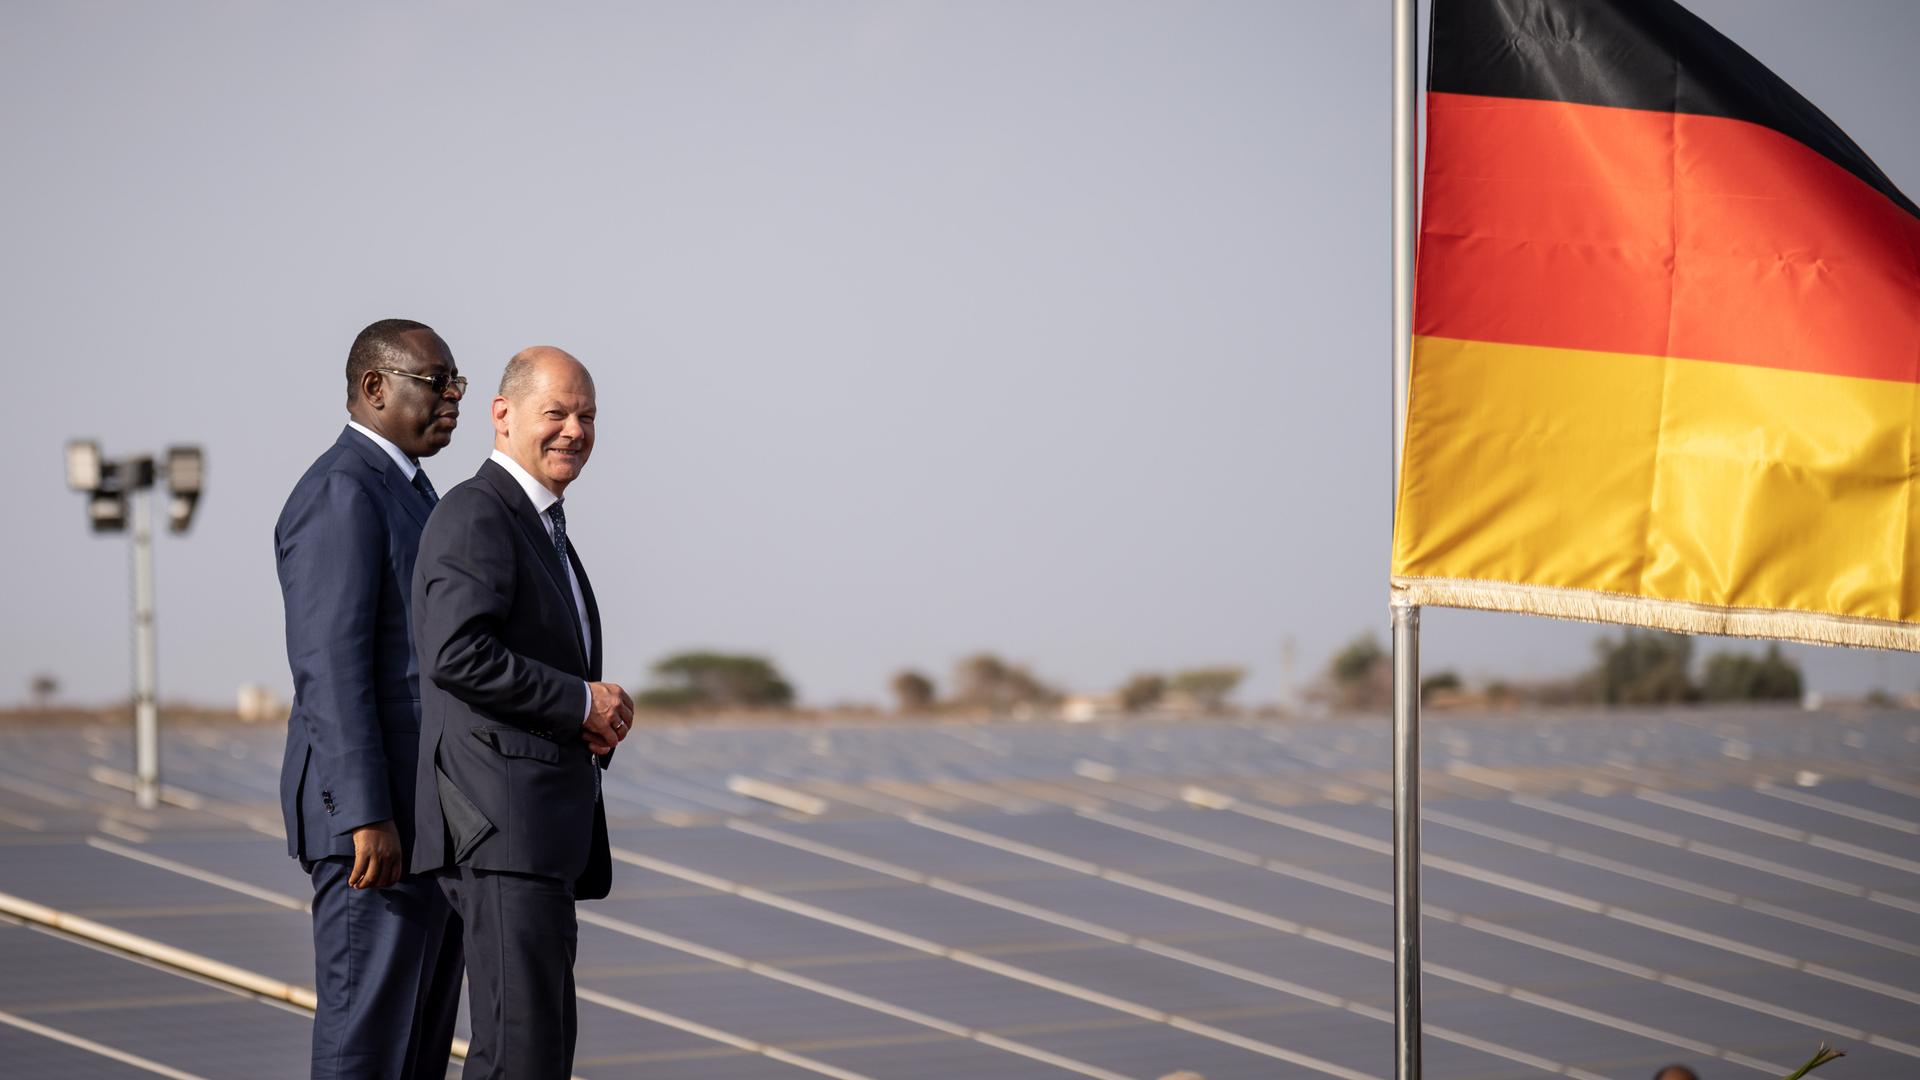 Bundeskanzler Olaf Scholz (SPD), nimmt neben Macky Sall, Präsident der Republik Senegal, an der Eröffnung einer Photovoltaikanlage in Diass teil. Neben den beiden weht die deutsche Flagge. 